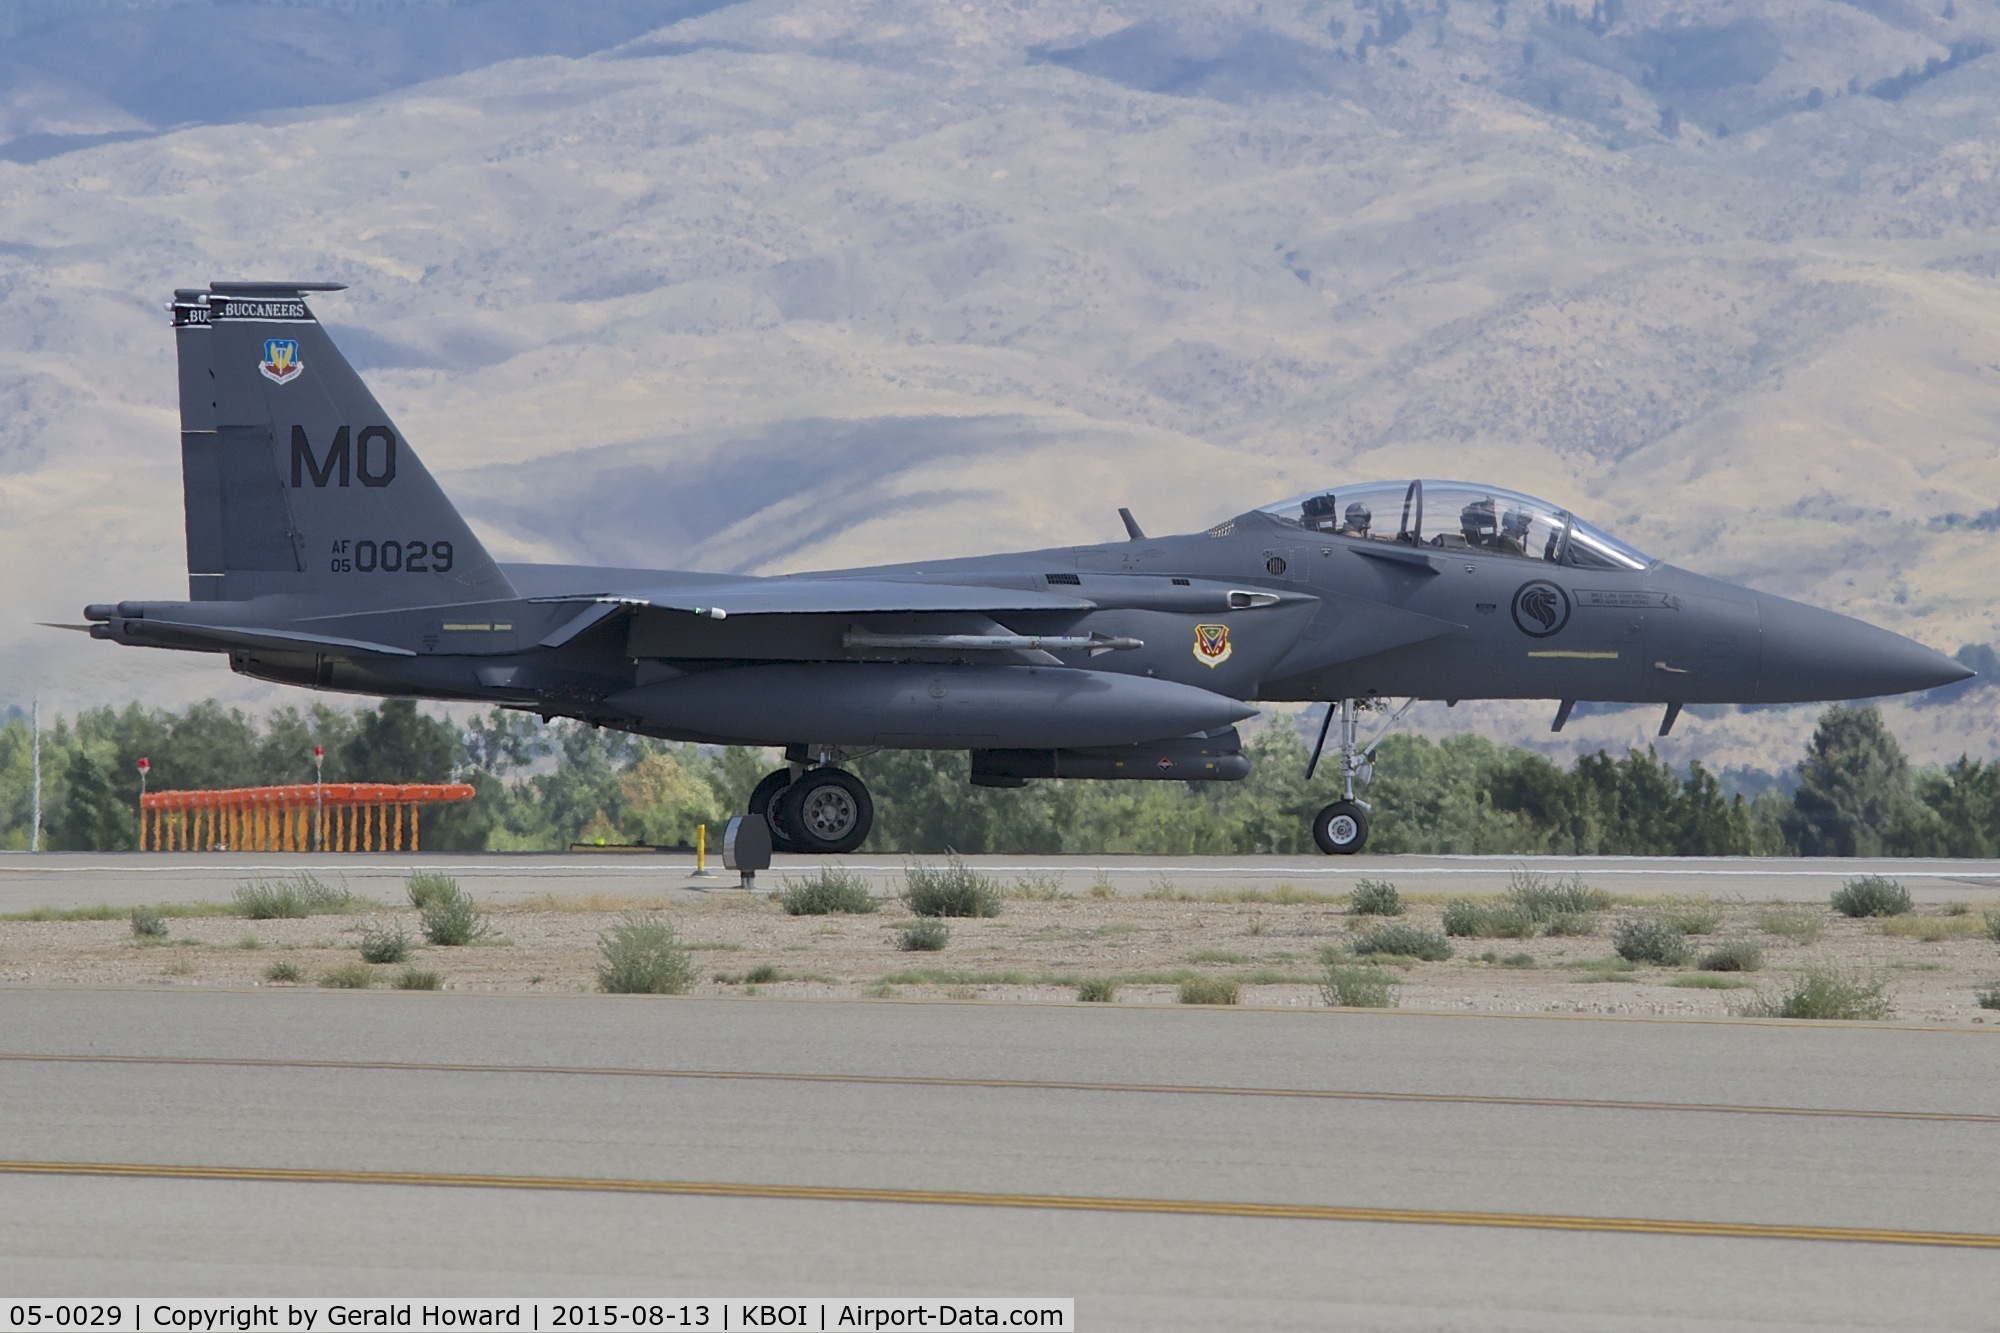 05-0029, 2005 Boeing F-15SG Strike Eagle C/N SG29, Starting take off roll on RWY 10R.